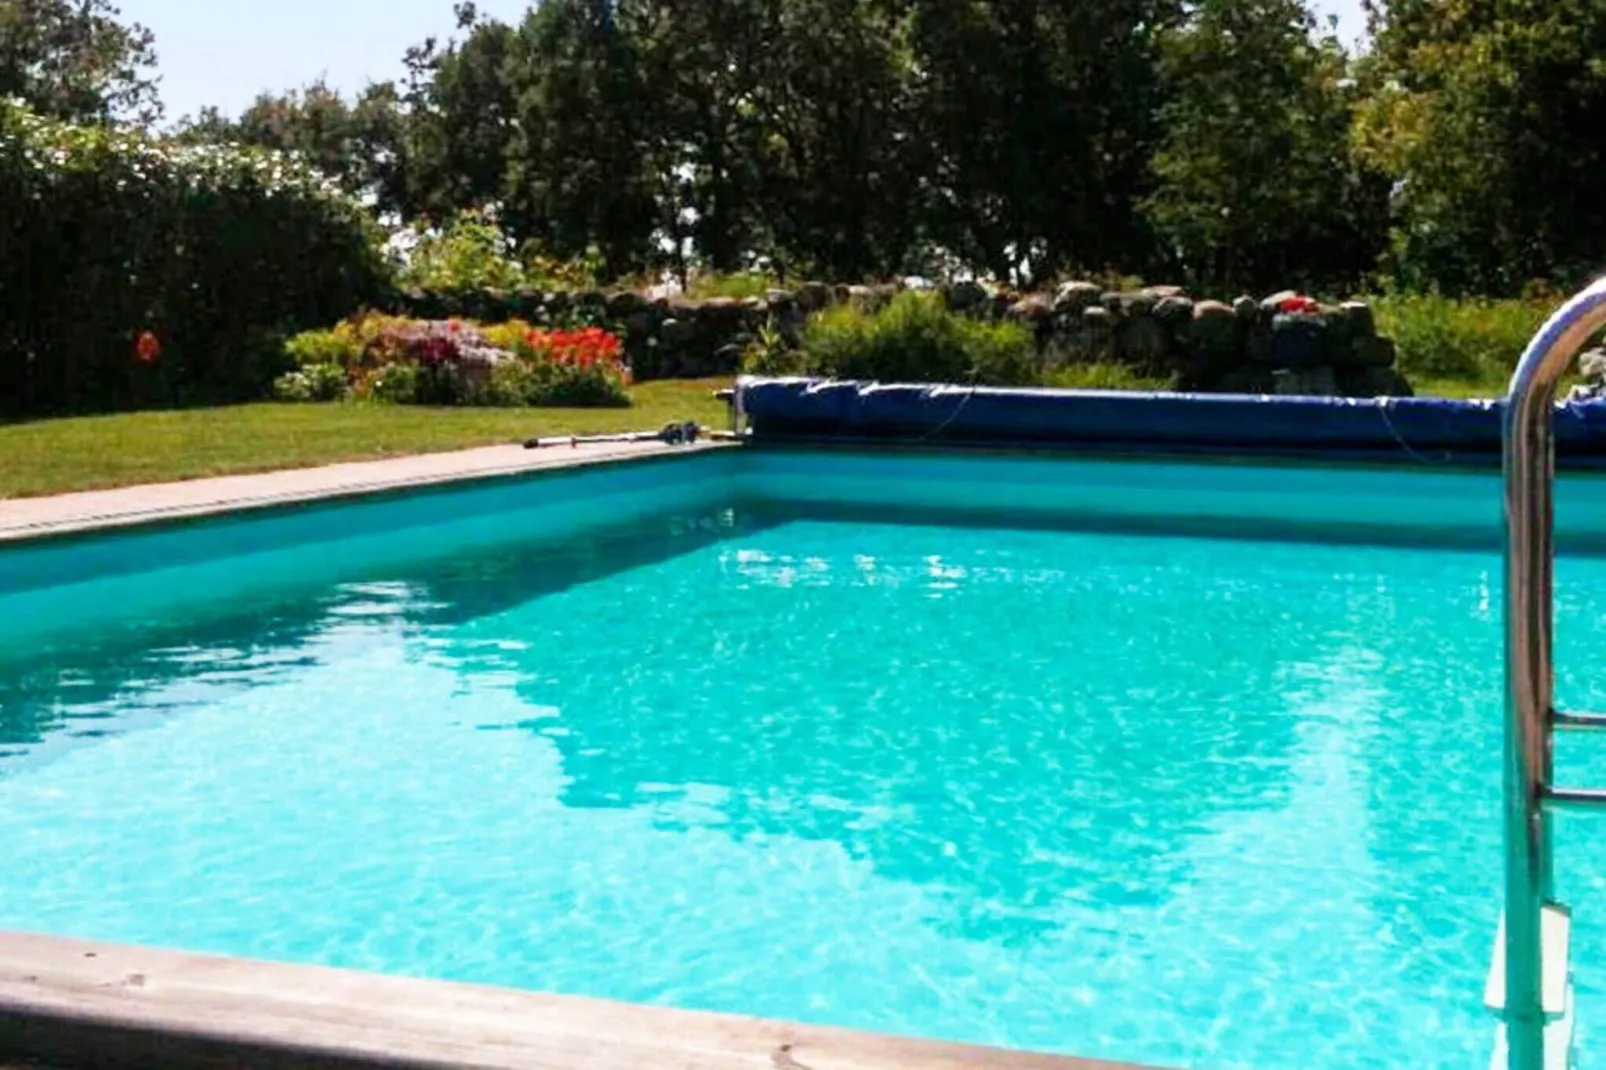 7 persoons vakantie huis in VARBERG-Zwembad